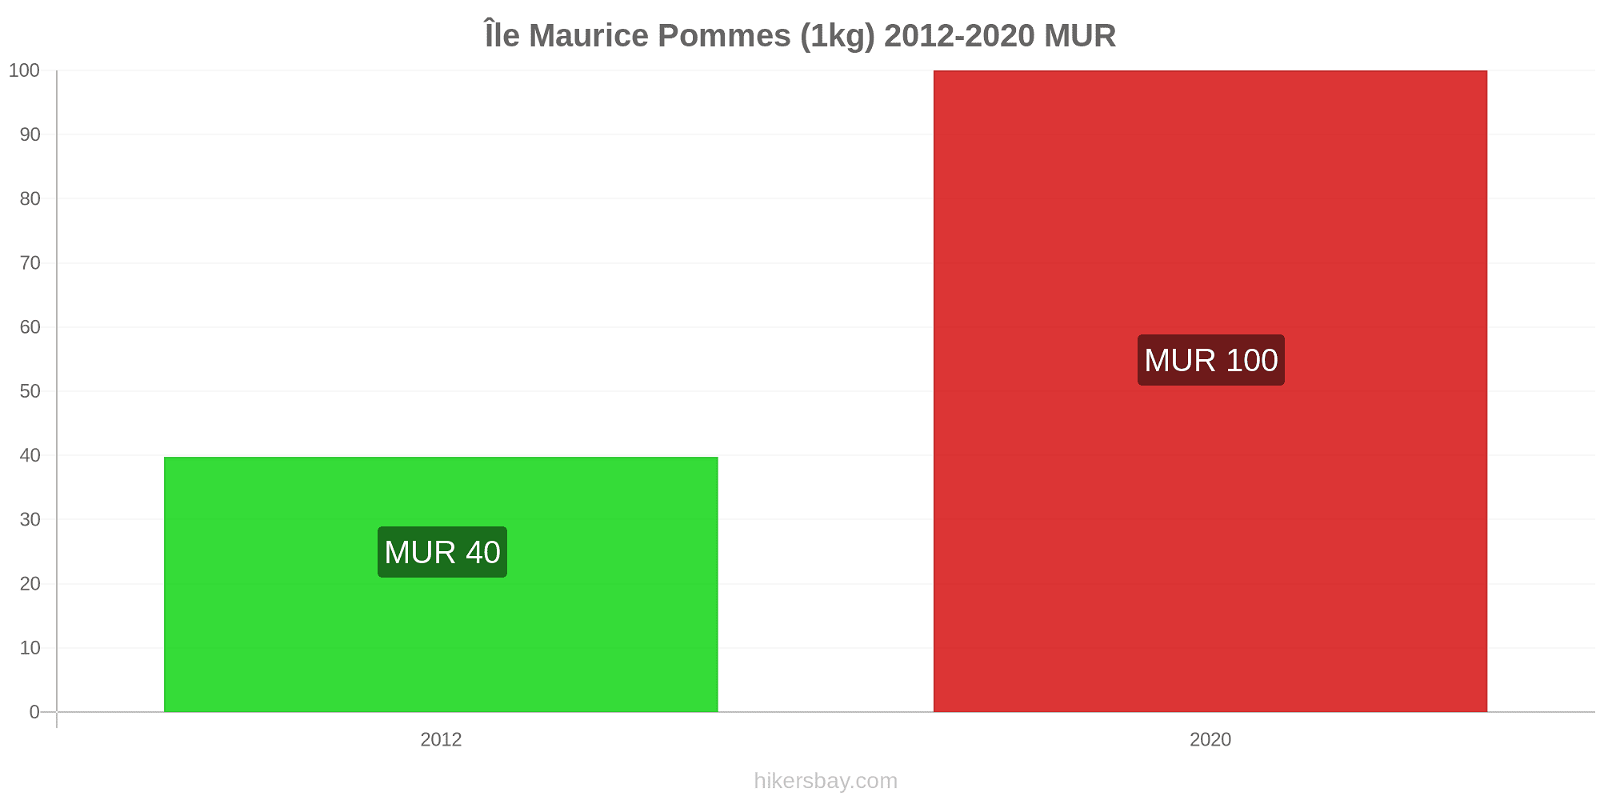 Île Maurice changements de prix Pommes (1kg) hikersbay.com